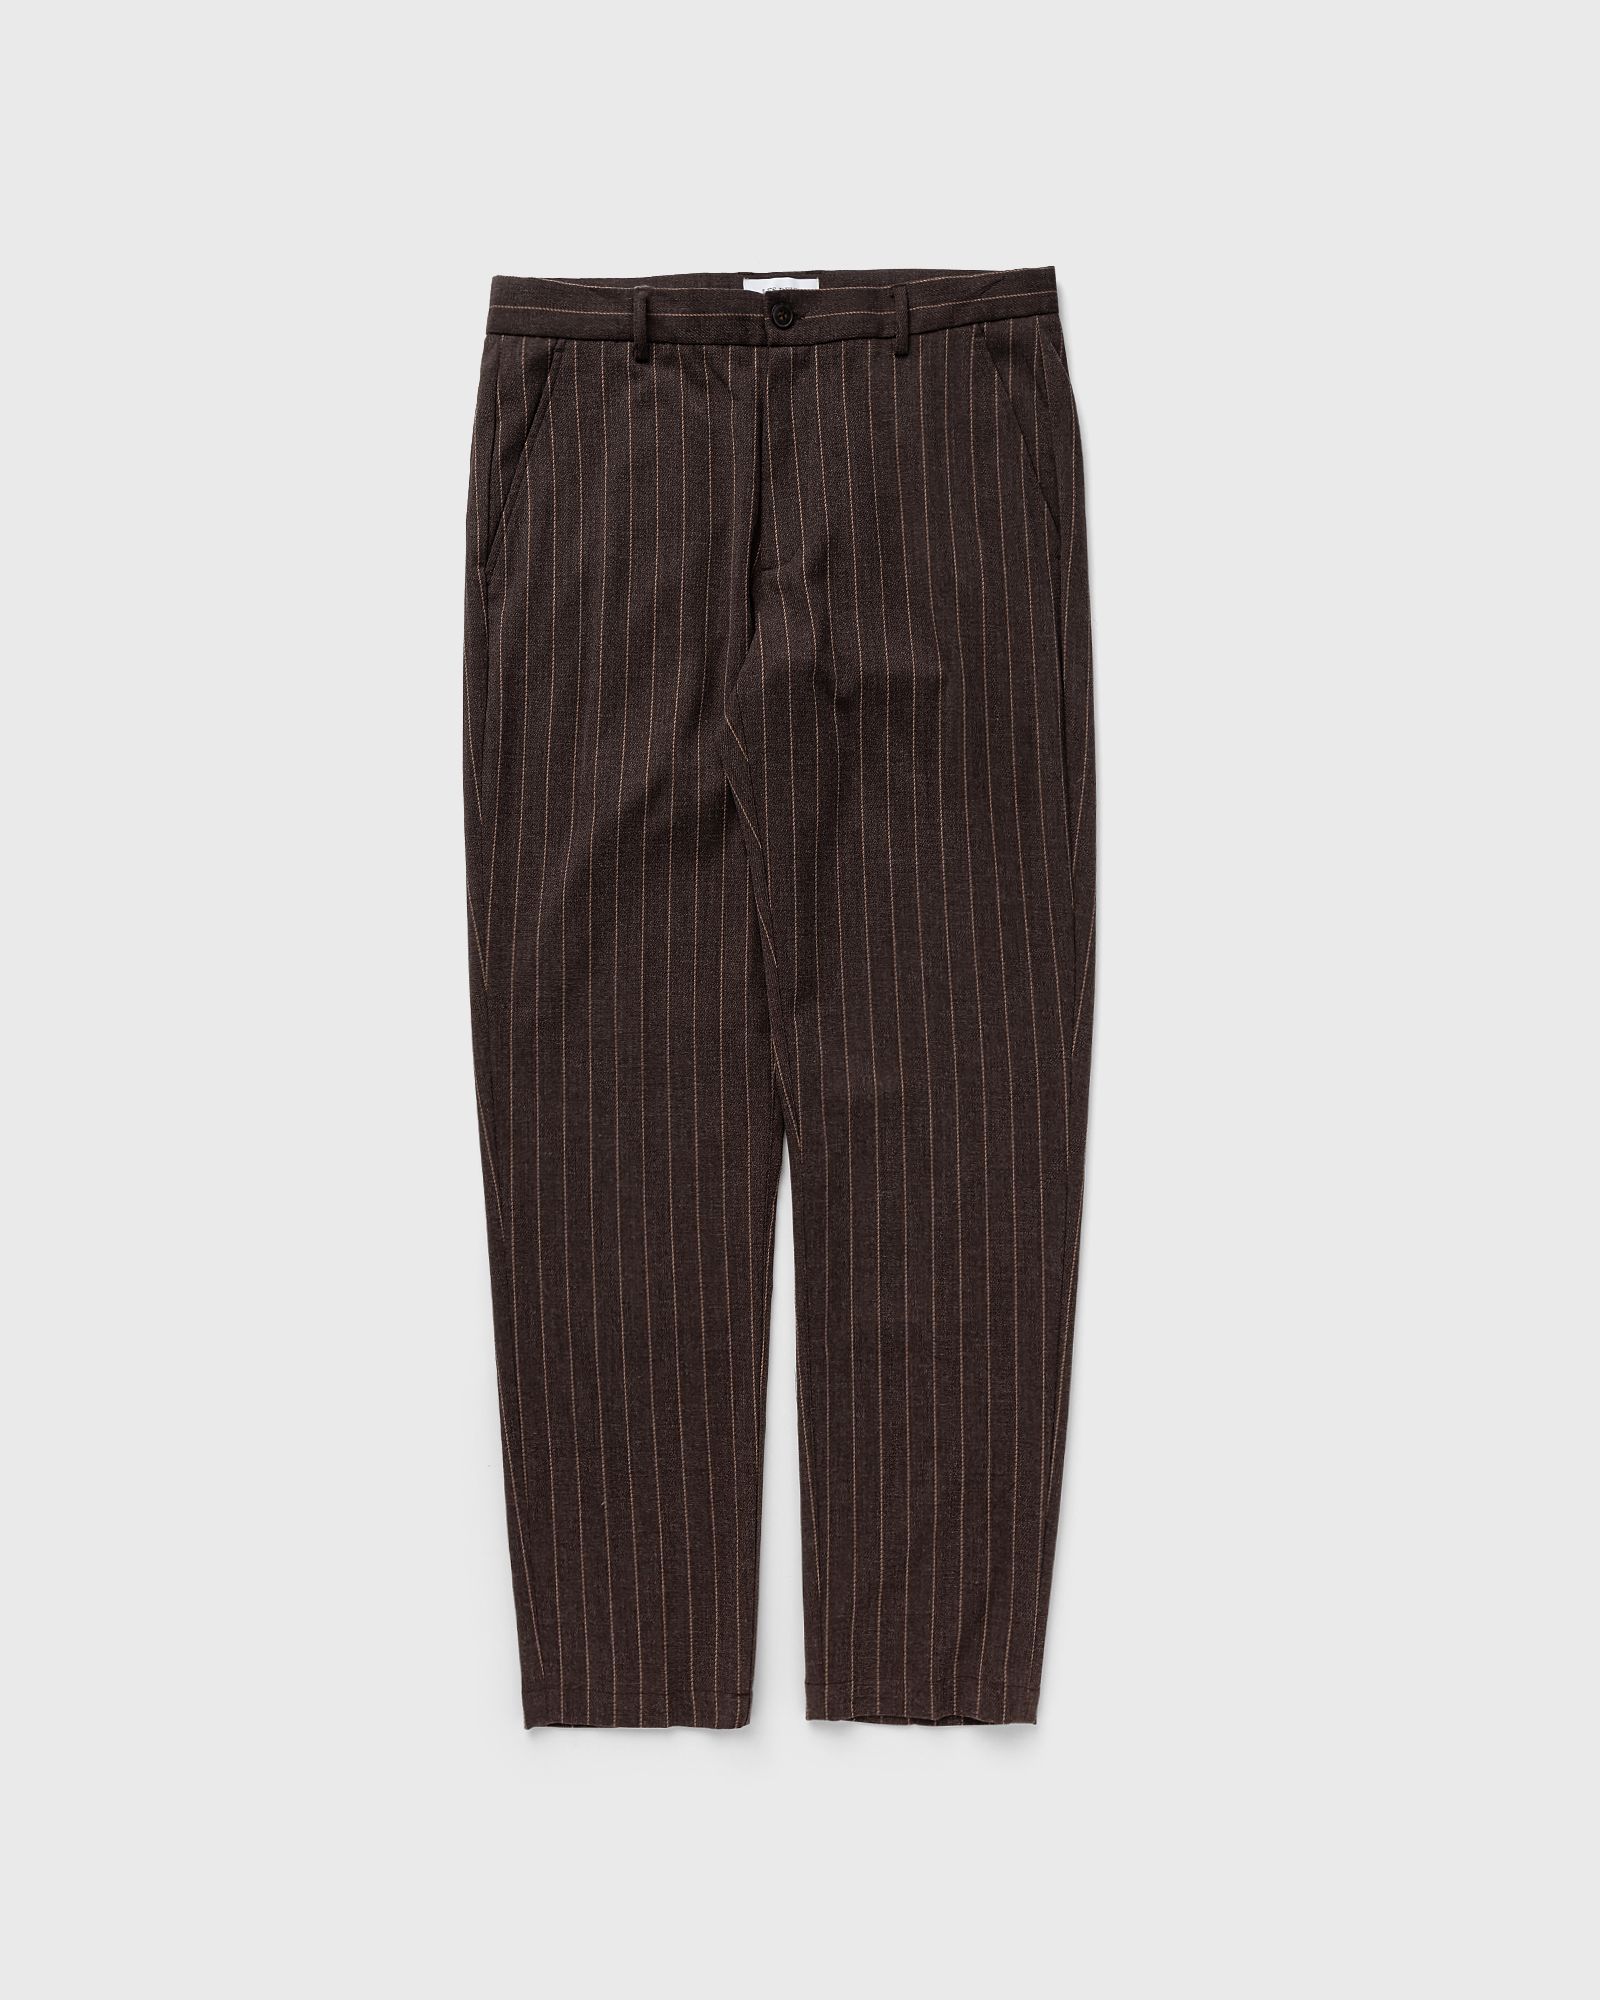 Les Deux - como reg pinstripe suit pants men casual pants brown in größe:m